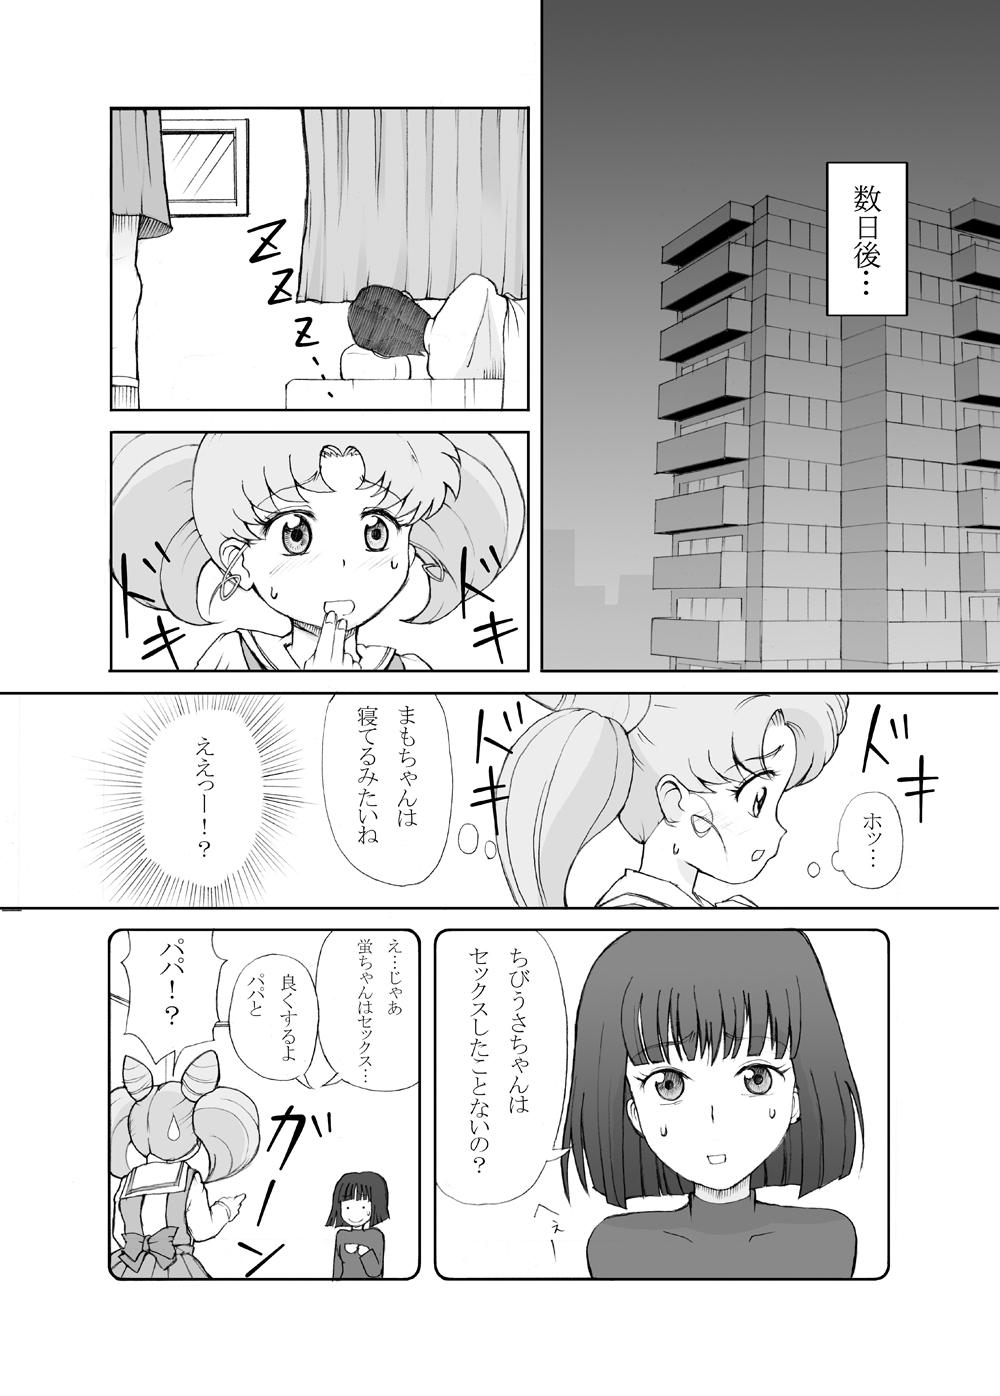 Dirty Talk Petit Usagi - Sailor moon Sexcam - Page 5